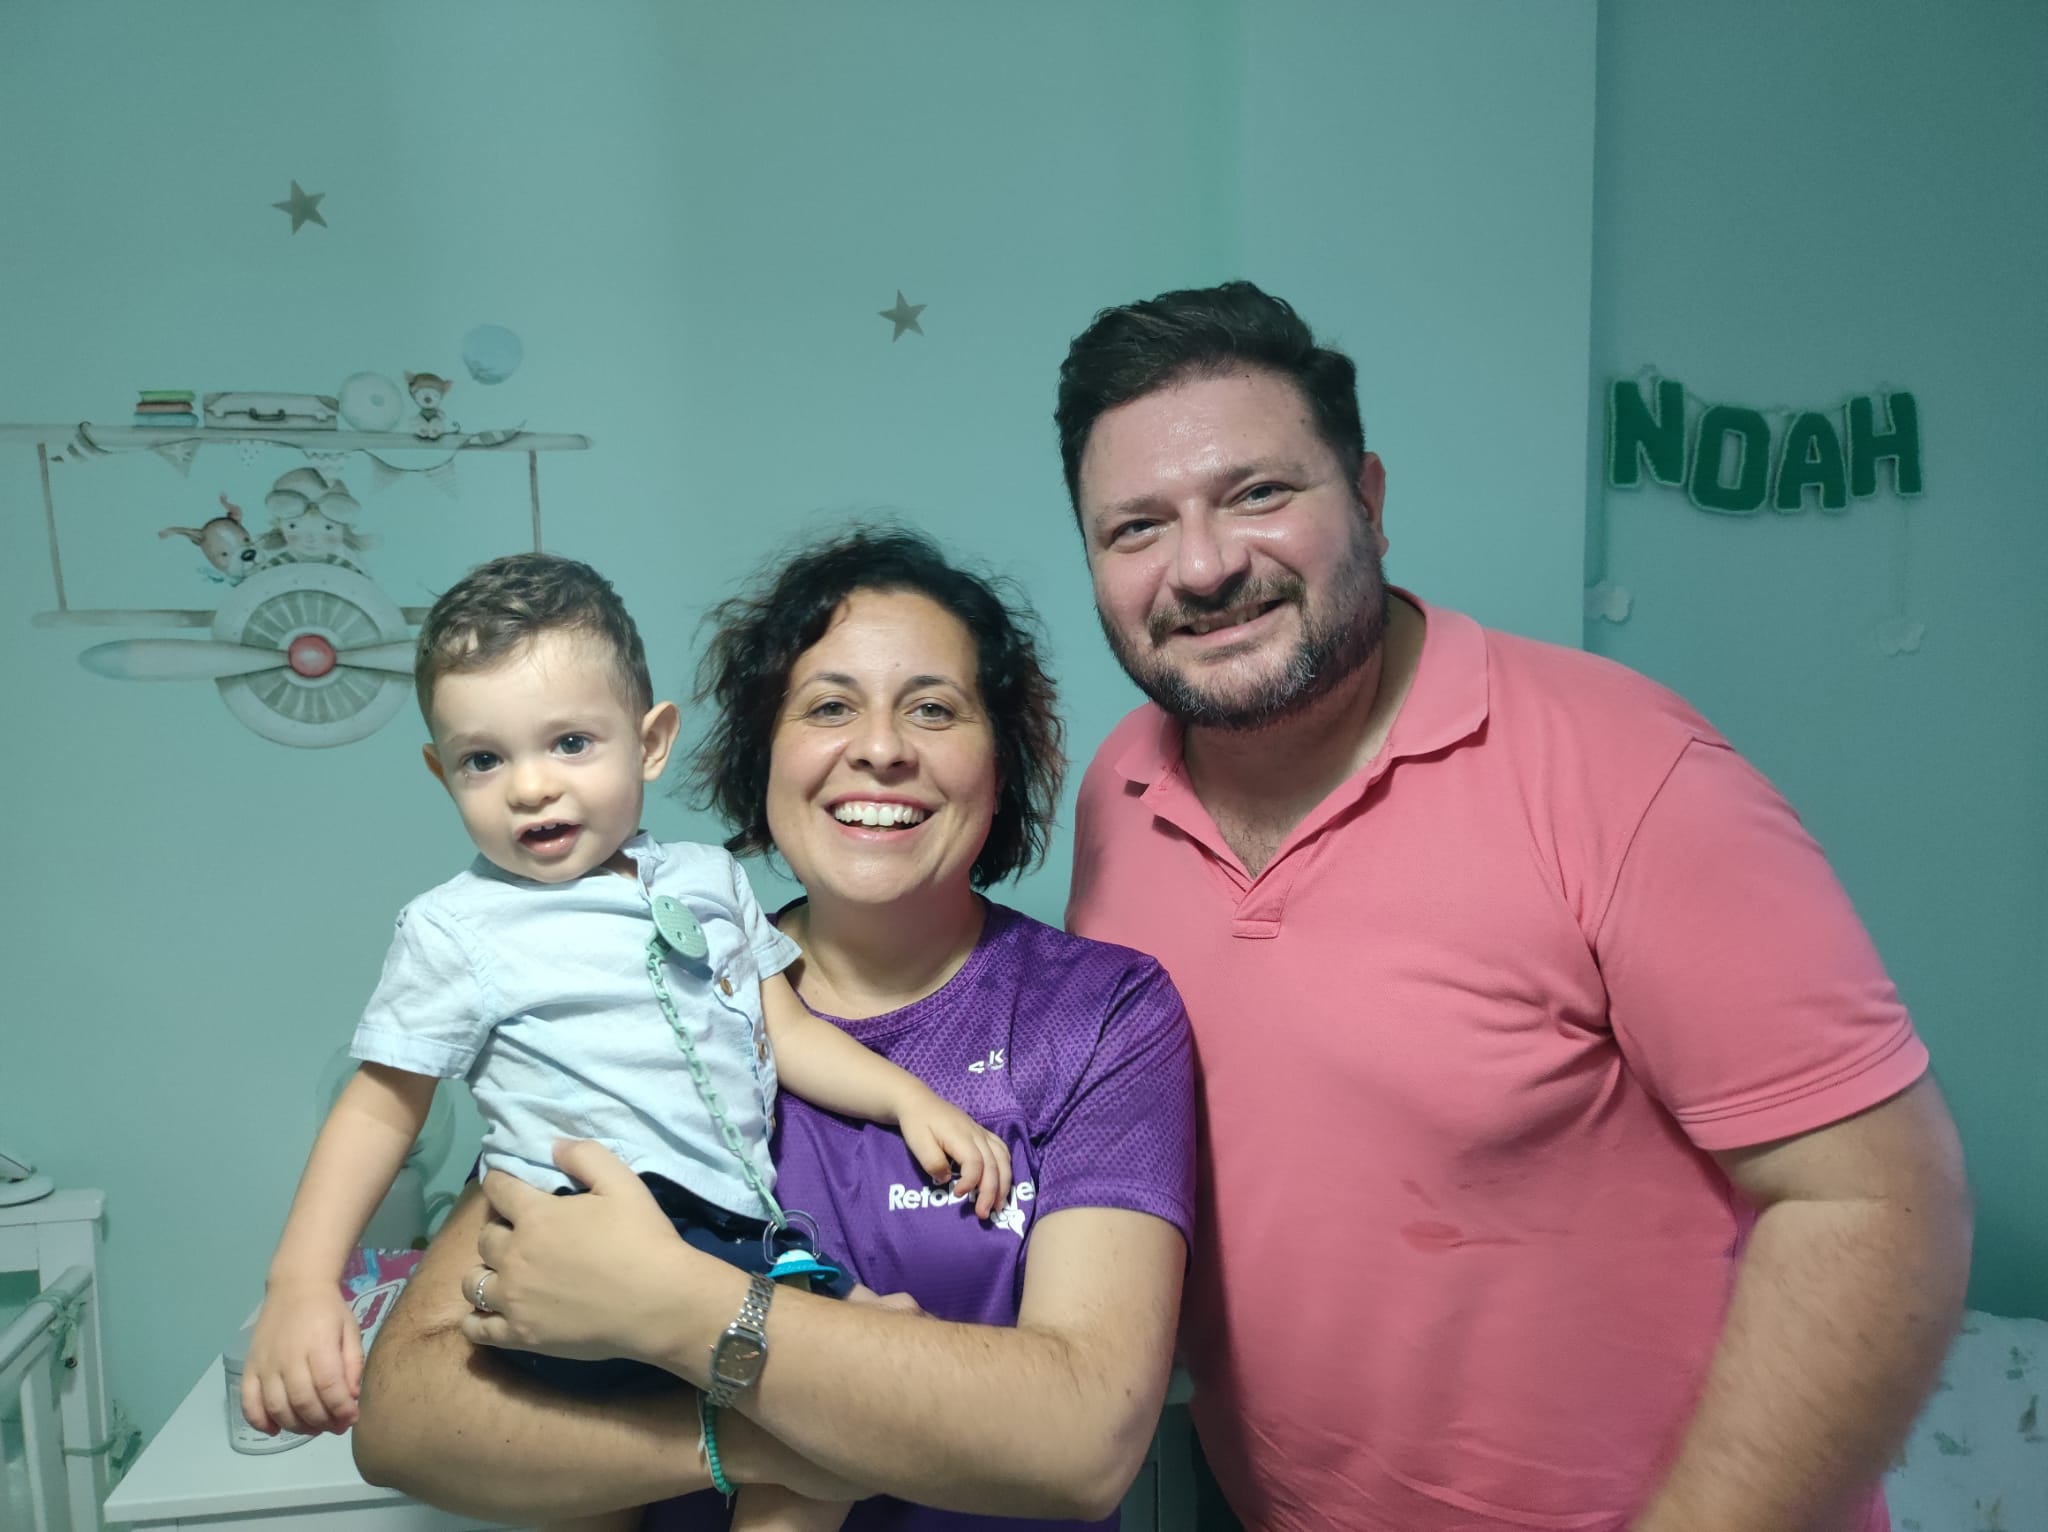 Los padres de Noah, un bebé de Algeciras con una enfermedad rara: "Solo queremos una oportunidad para él". En esta imagen, el pequeño Noah junto a sus padres, Juanlu y Vanesa.